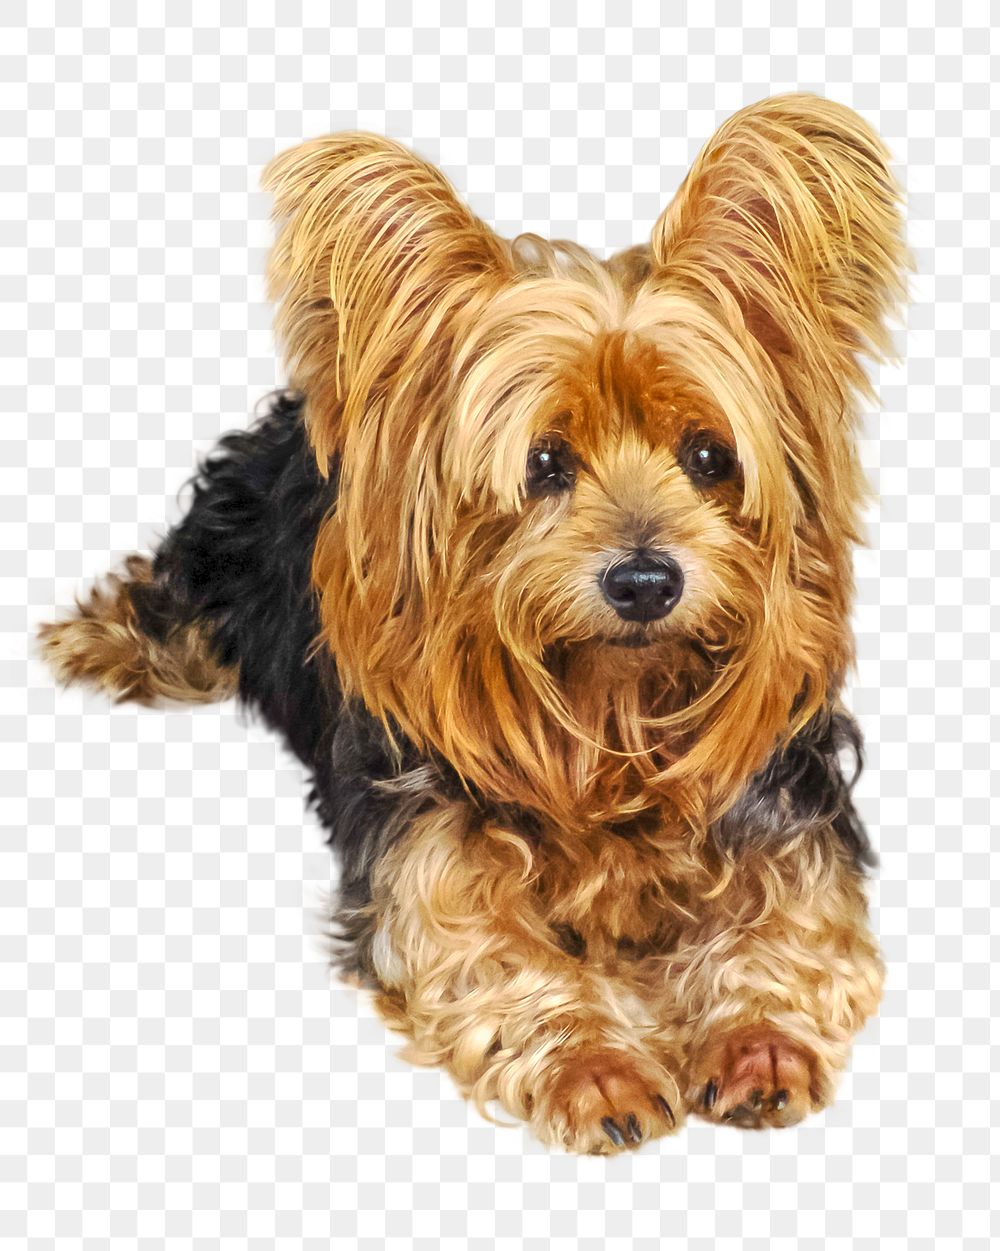 Adorable yorkshire terrier png lapdog, transparent background